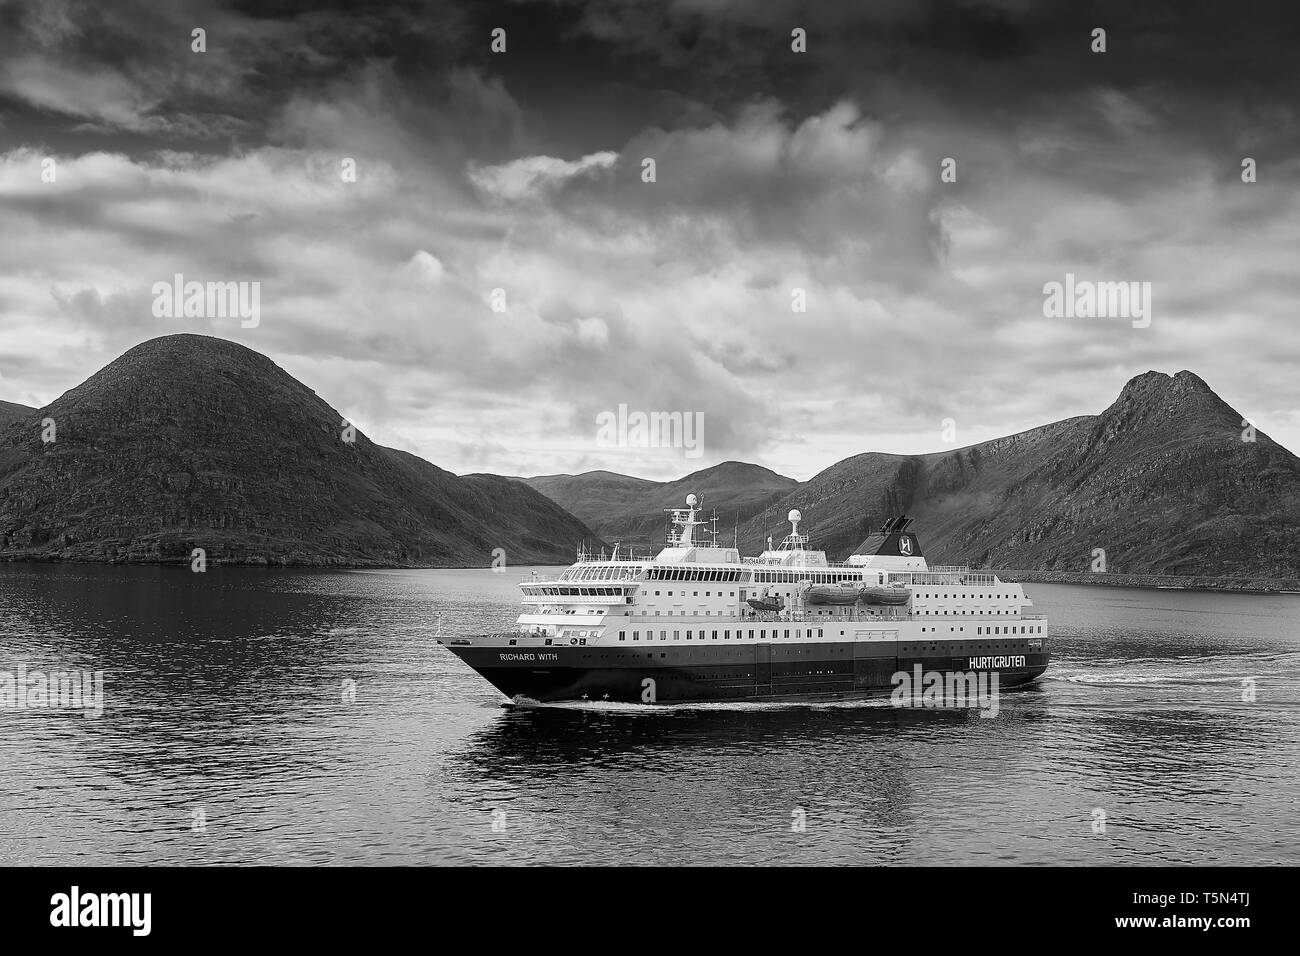 Moody Schwarz-weiß-Foto der norwegischen Hurtigruten-Fähre, MS Richard with, Abfahrt Havøysund, Dampfen in südlicher Richtung. Norwegen. Stockfoto